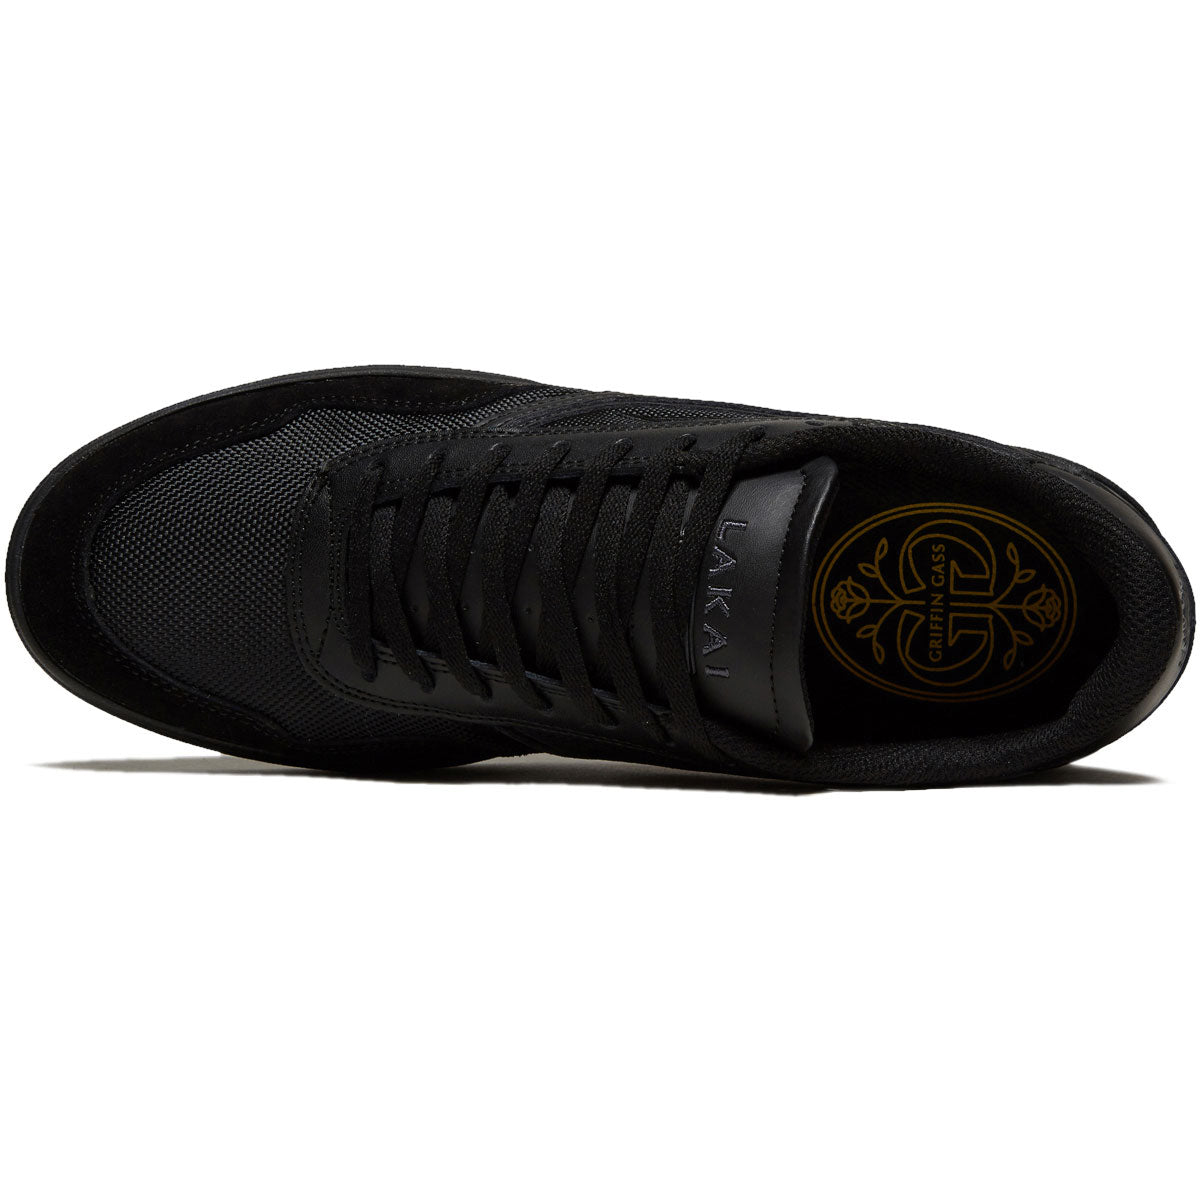 Lakai Terrace Shoes - Black/Black Suede image 3